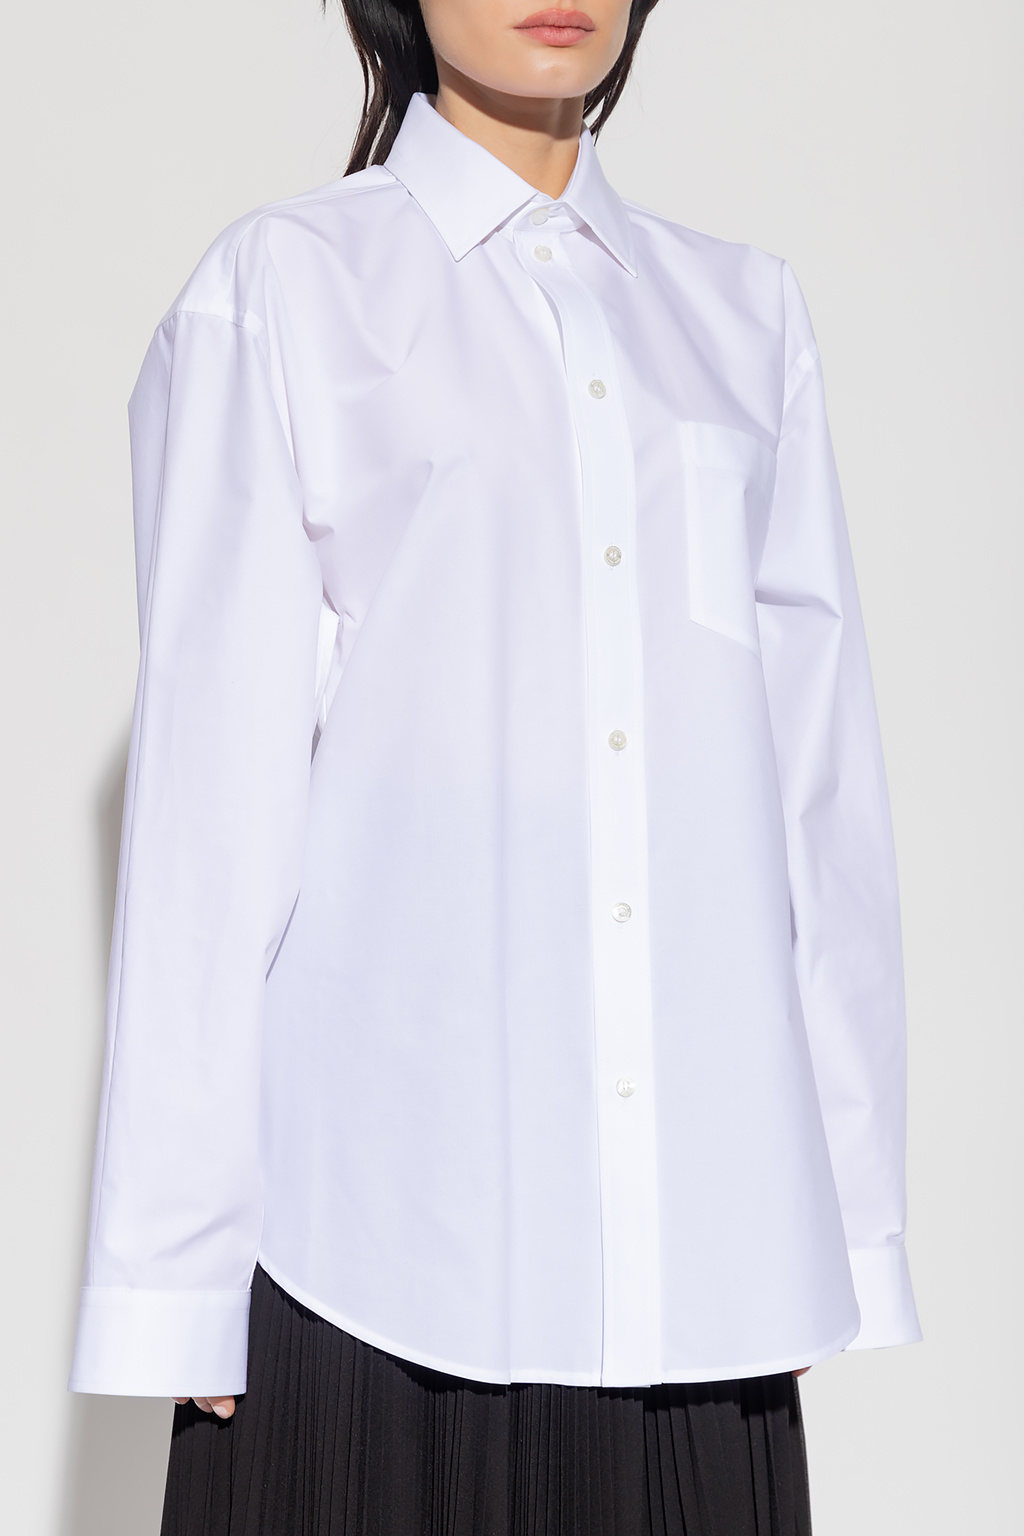 Balenciaga Cotton shirt